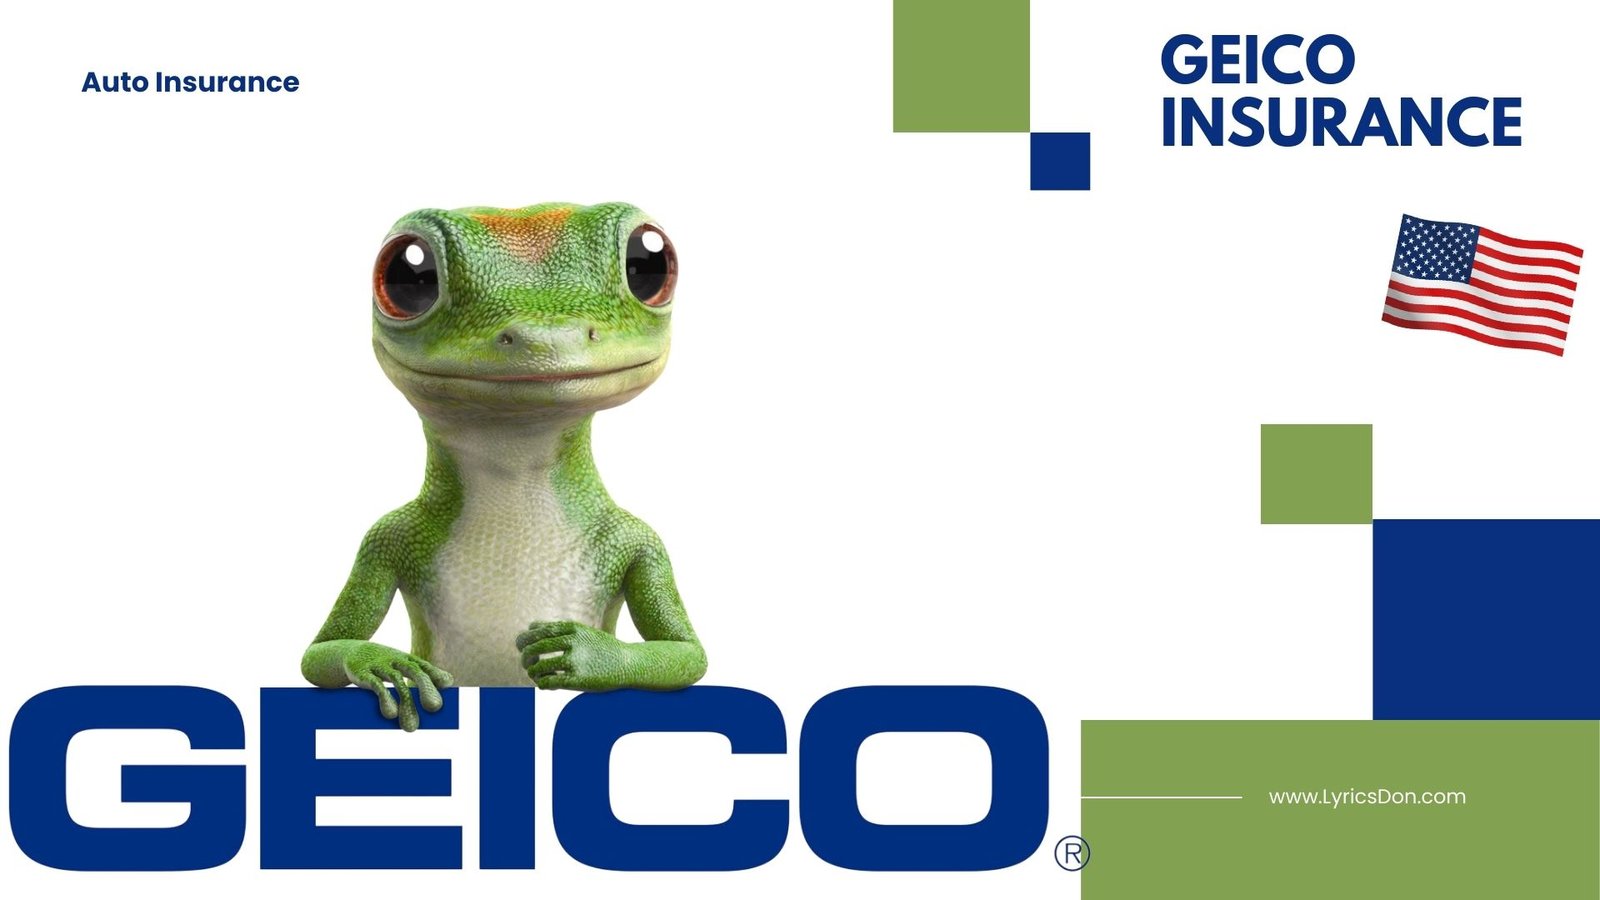 Geico Auto Insurance भारत में उपलब्ध है?